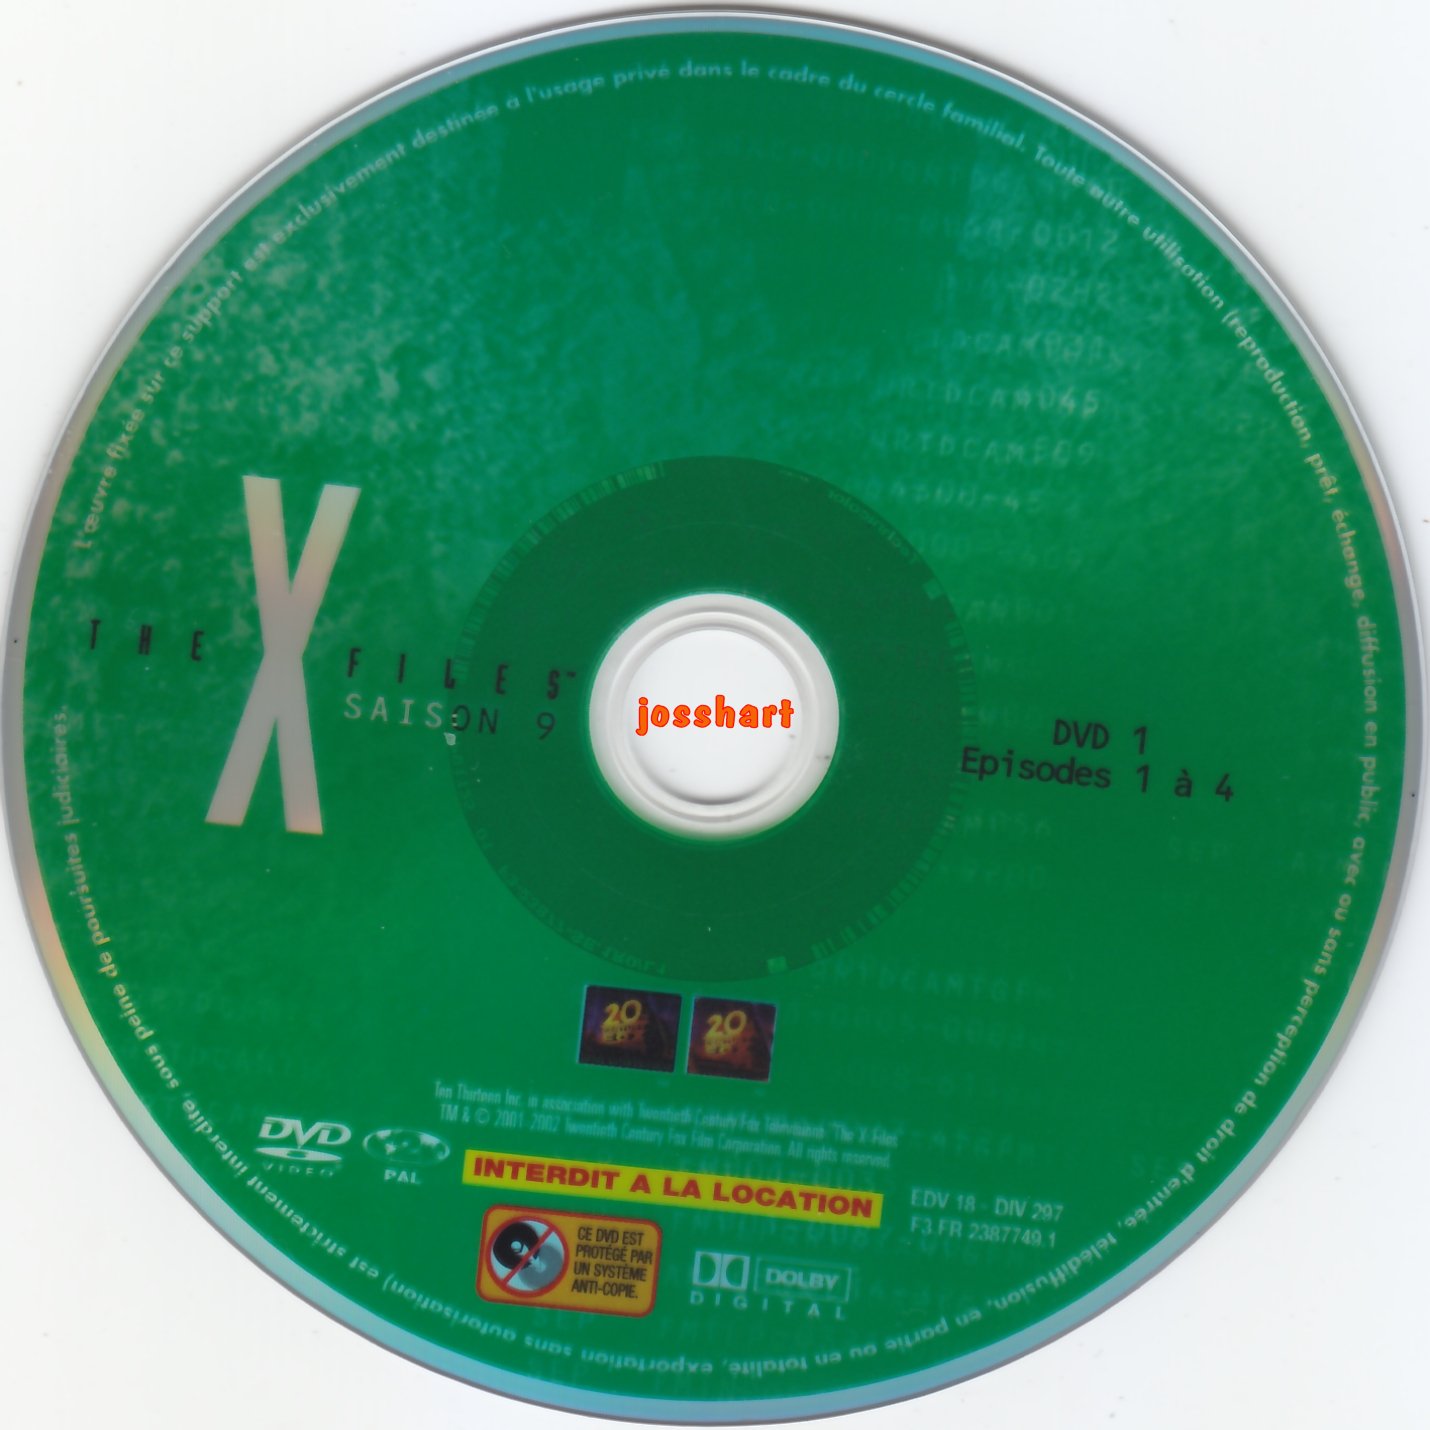 The X Files Saison 9 DVD 1 v2